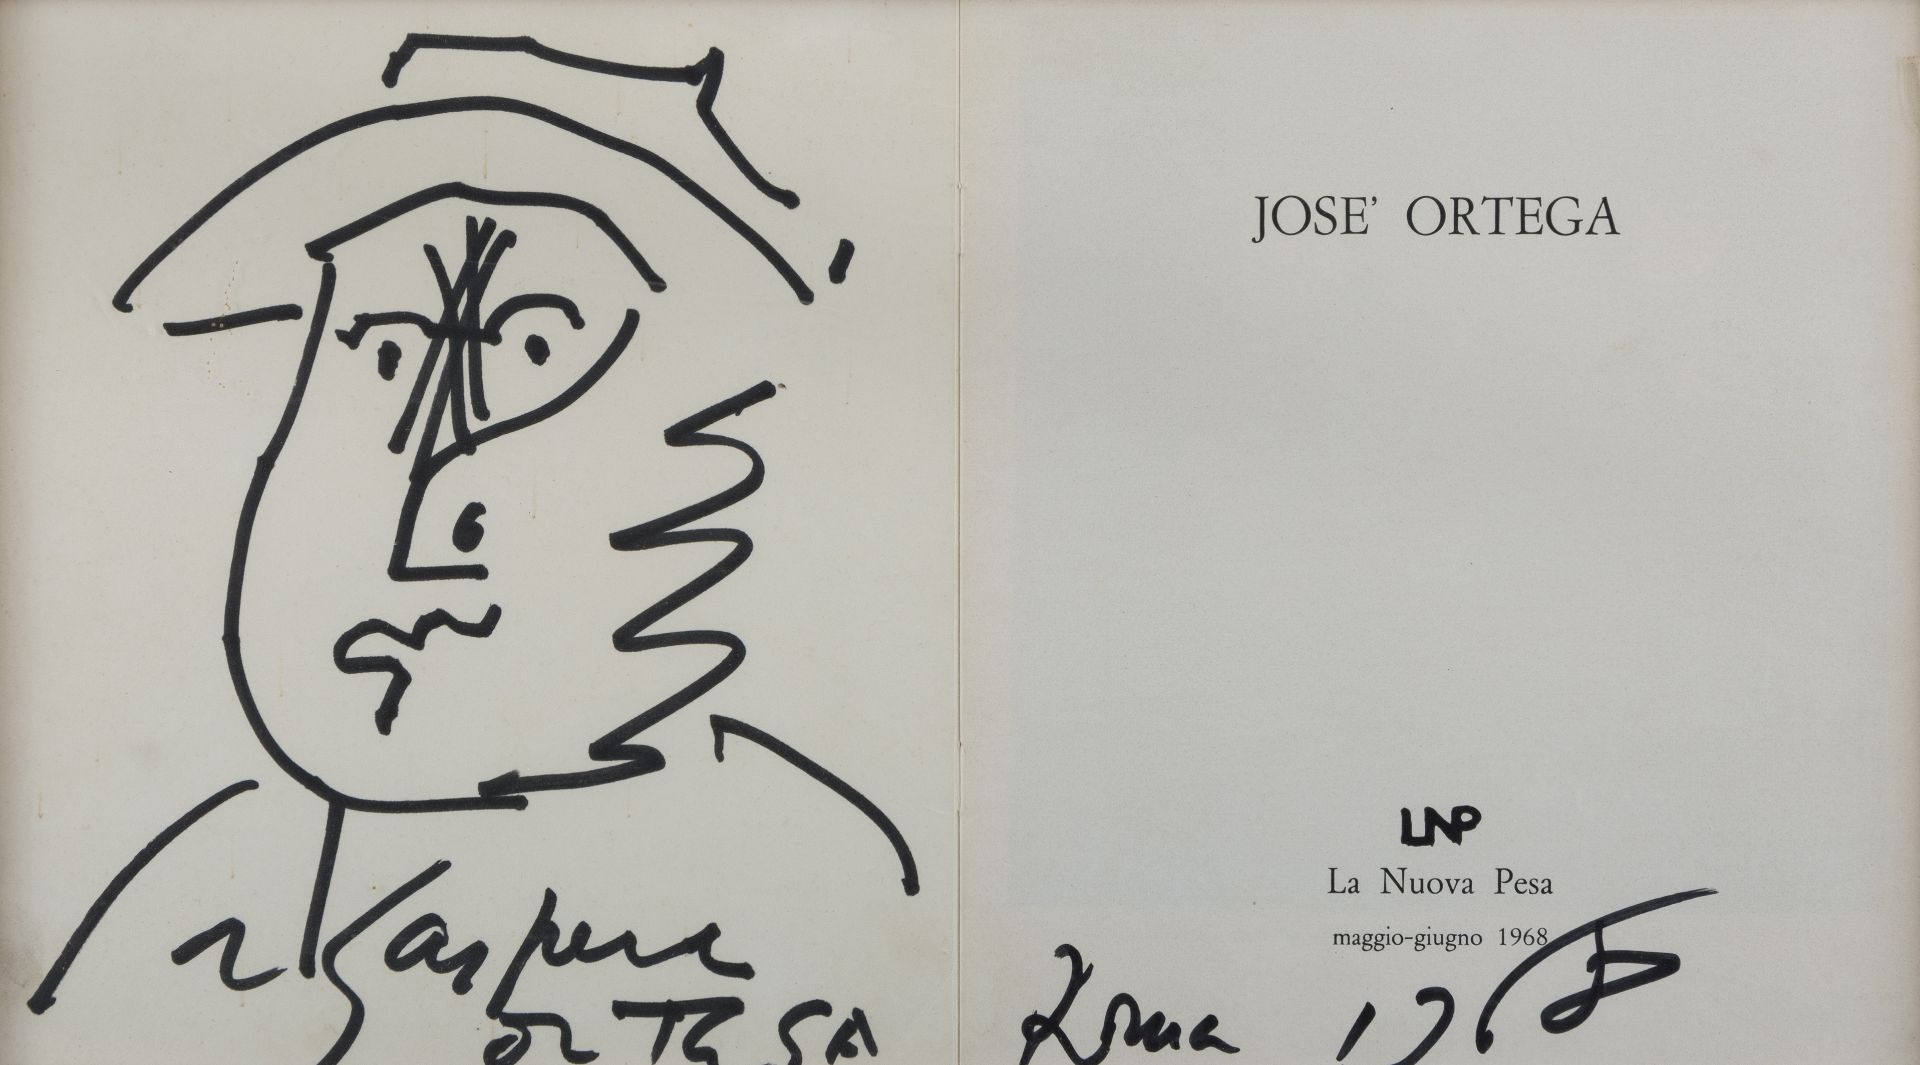 JOSÉ ORTEGA (Arroba de los Montes 1921- Parigi 1991) Ritratto, 1968